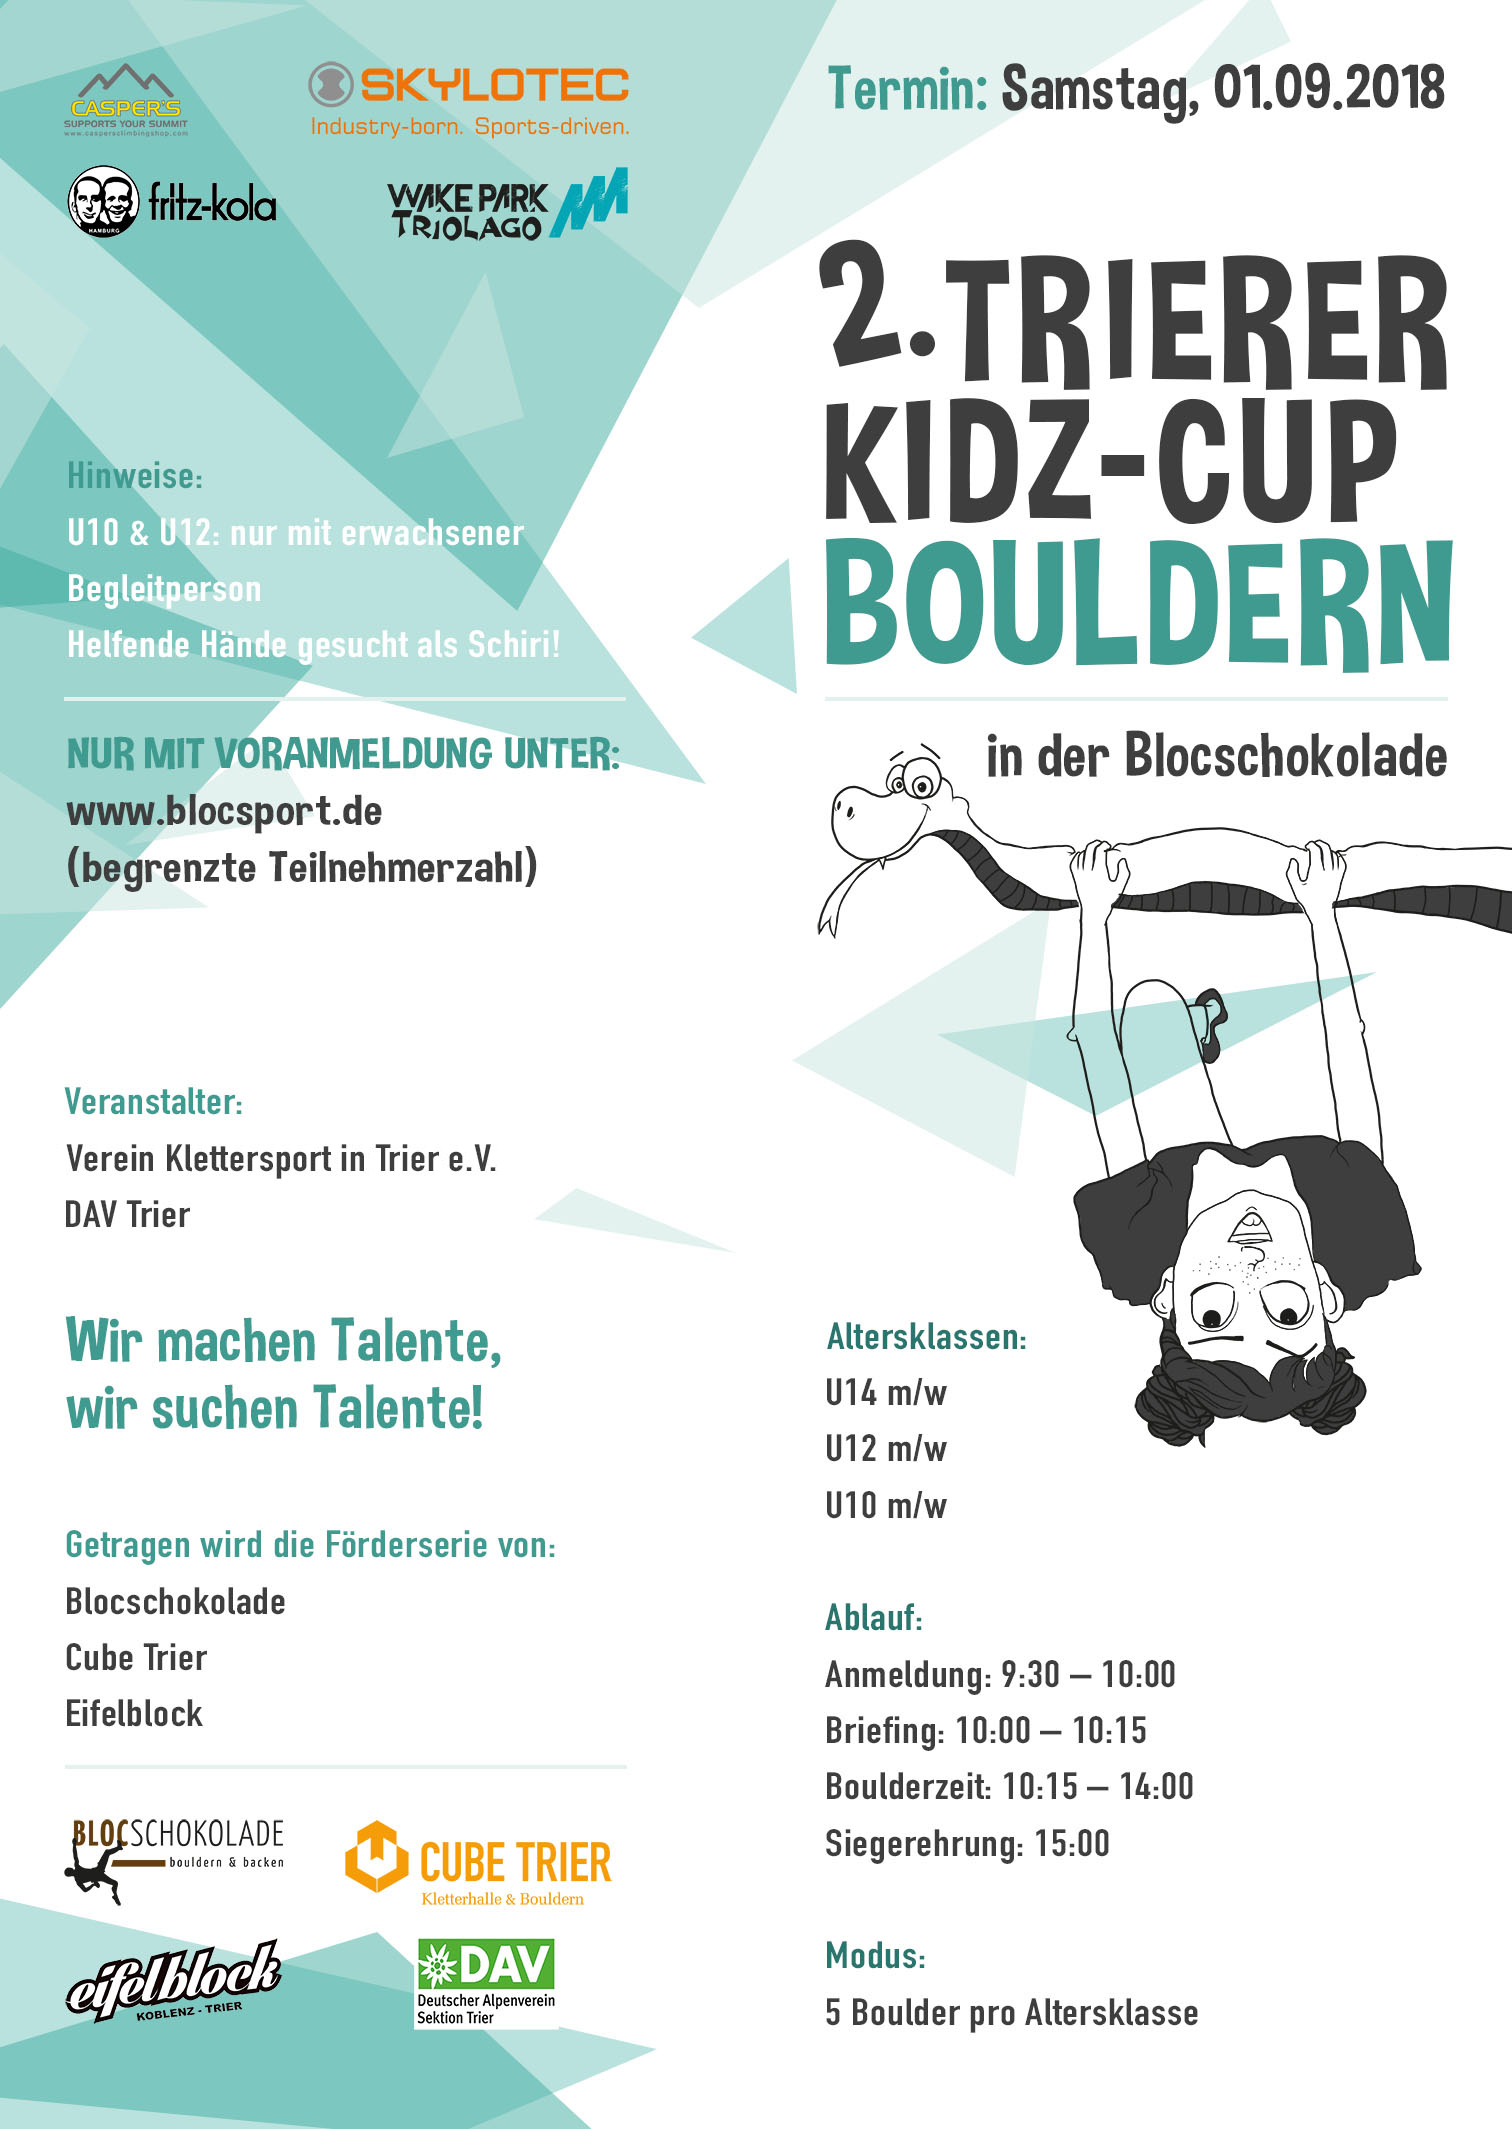 Poster for 2. Trierer KIDZ-Cup Bouldern